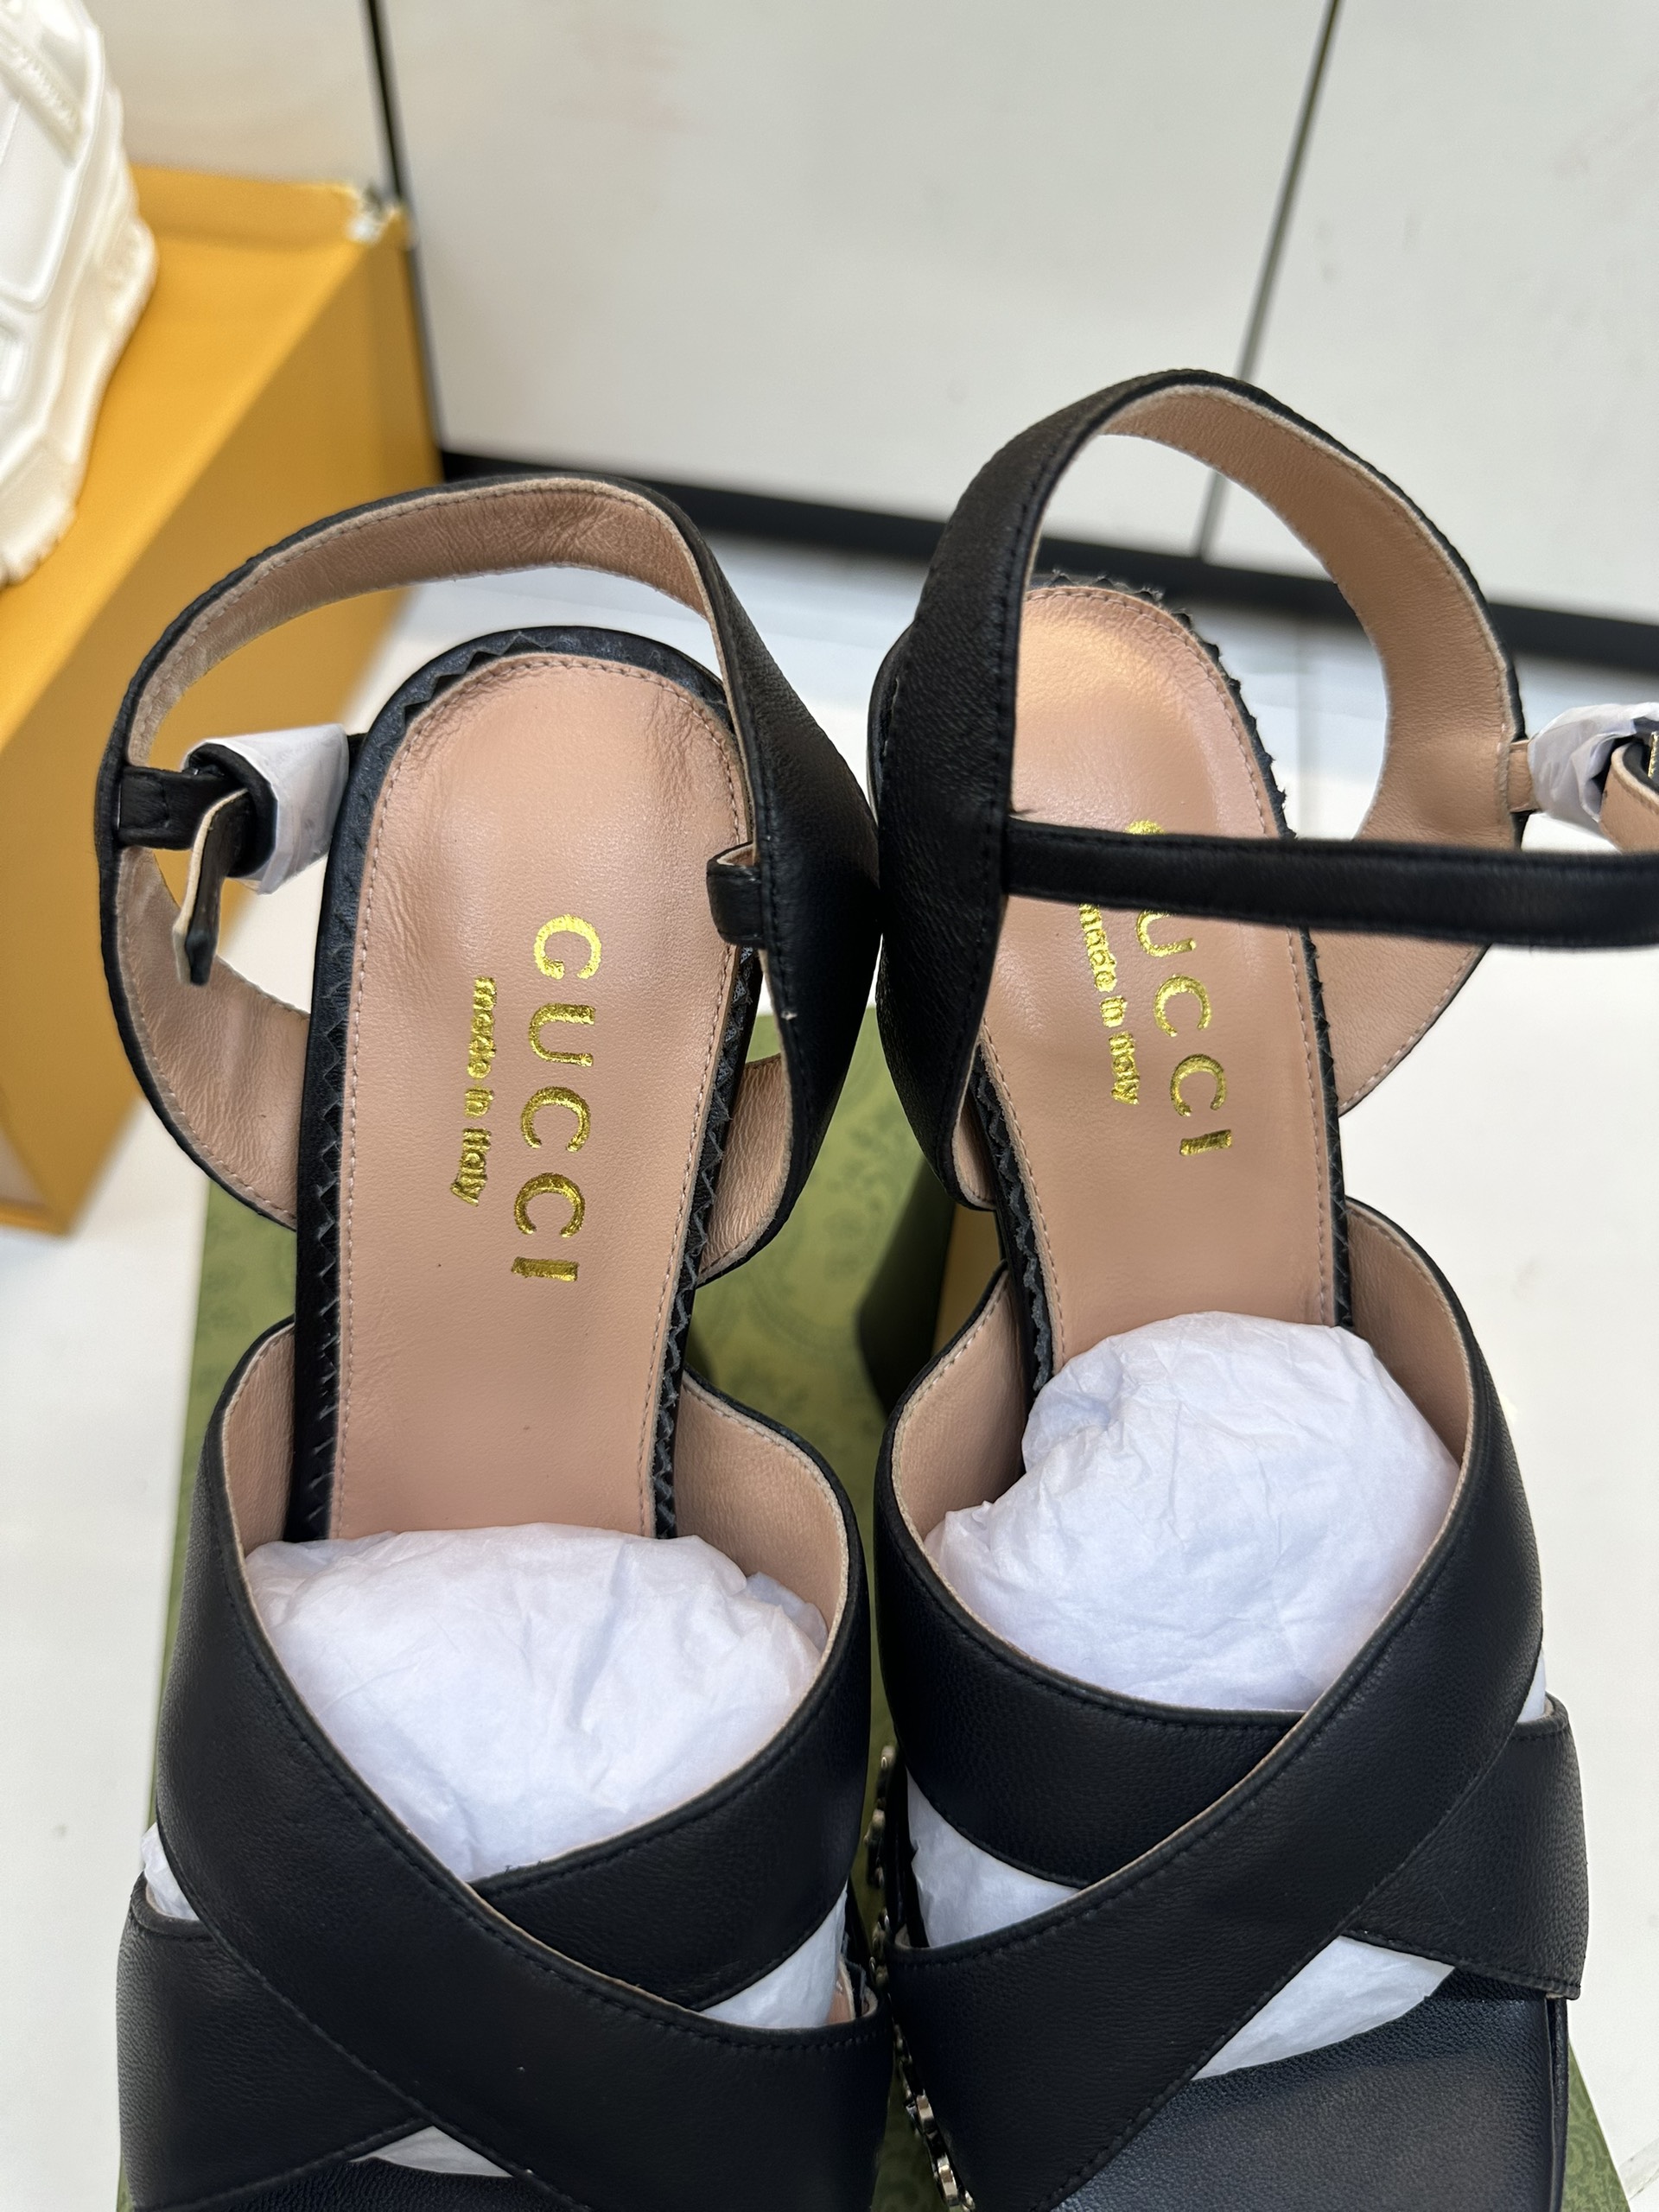 Giày Gucci Interlocking G Studs Sandal Siêu Cấp Màu Đen Heel 15cm Size 35